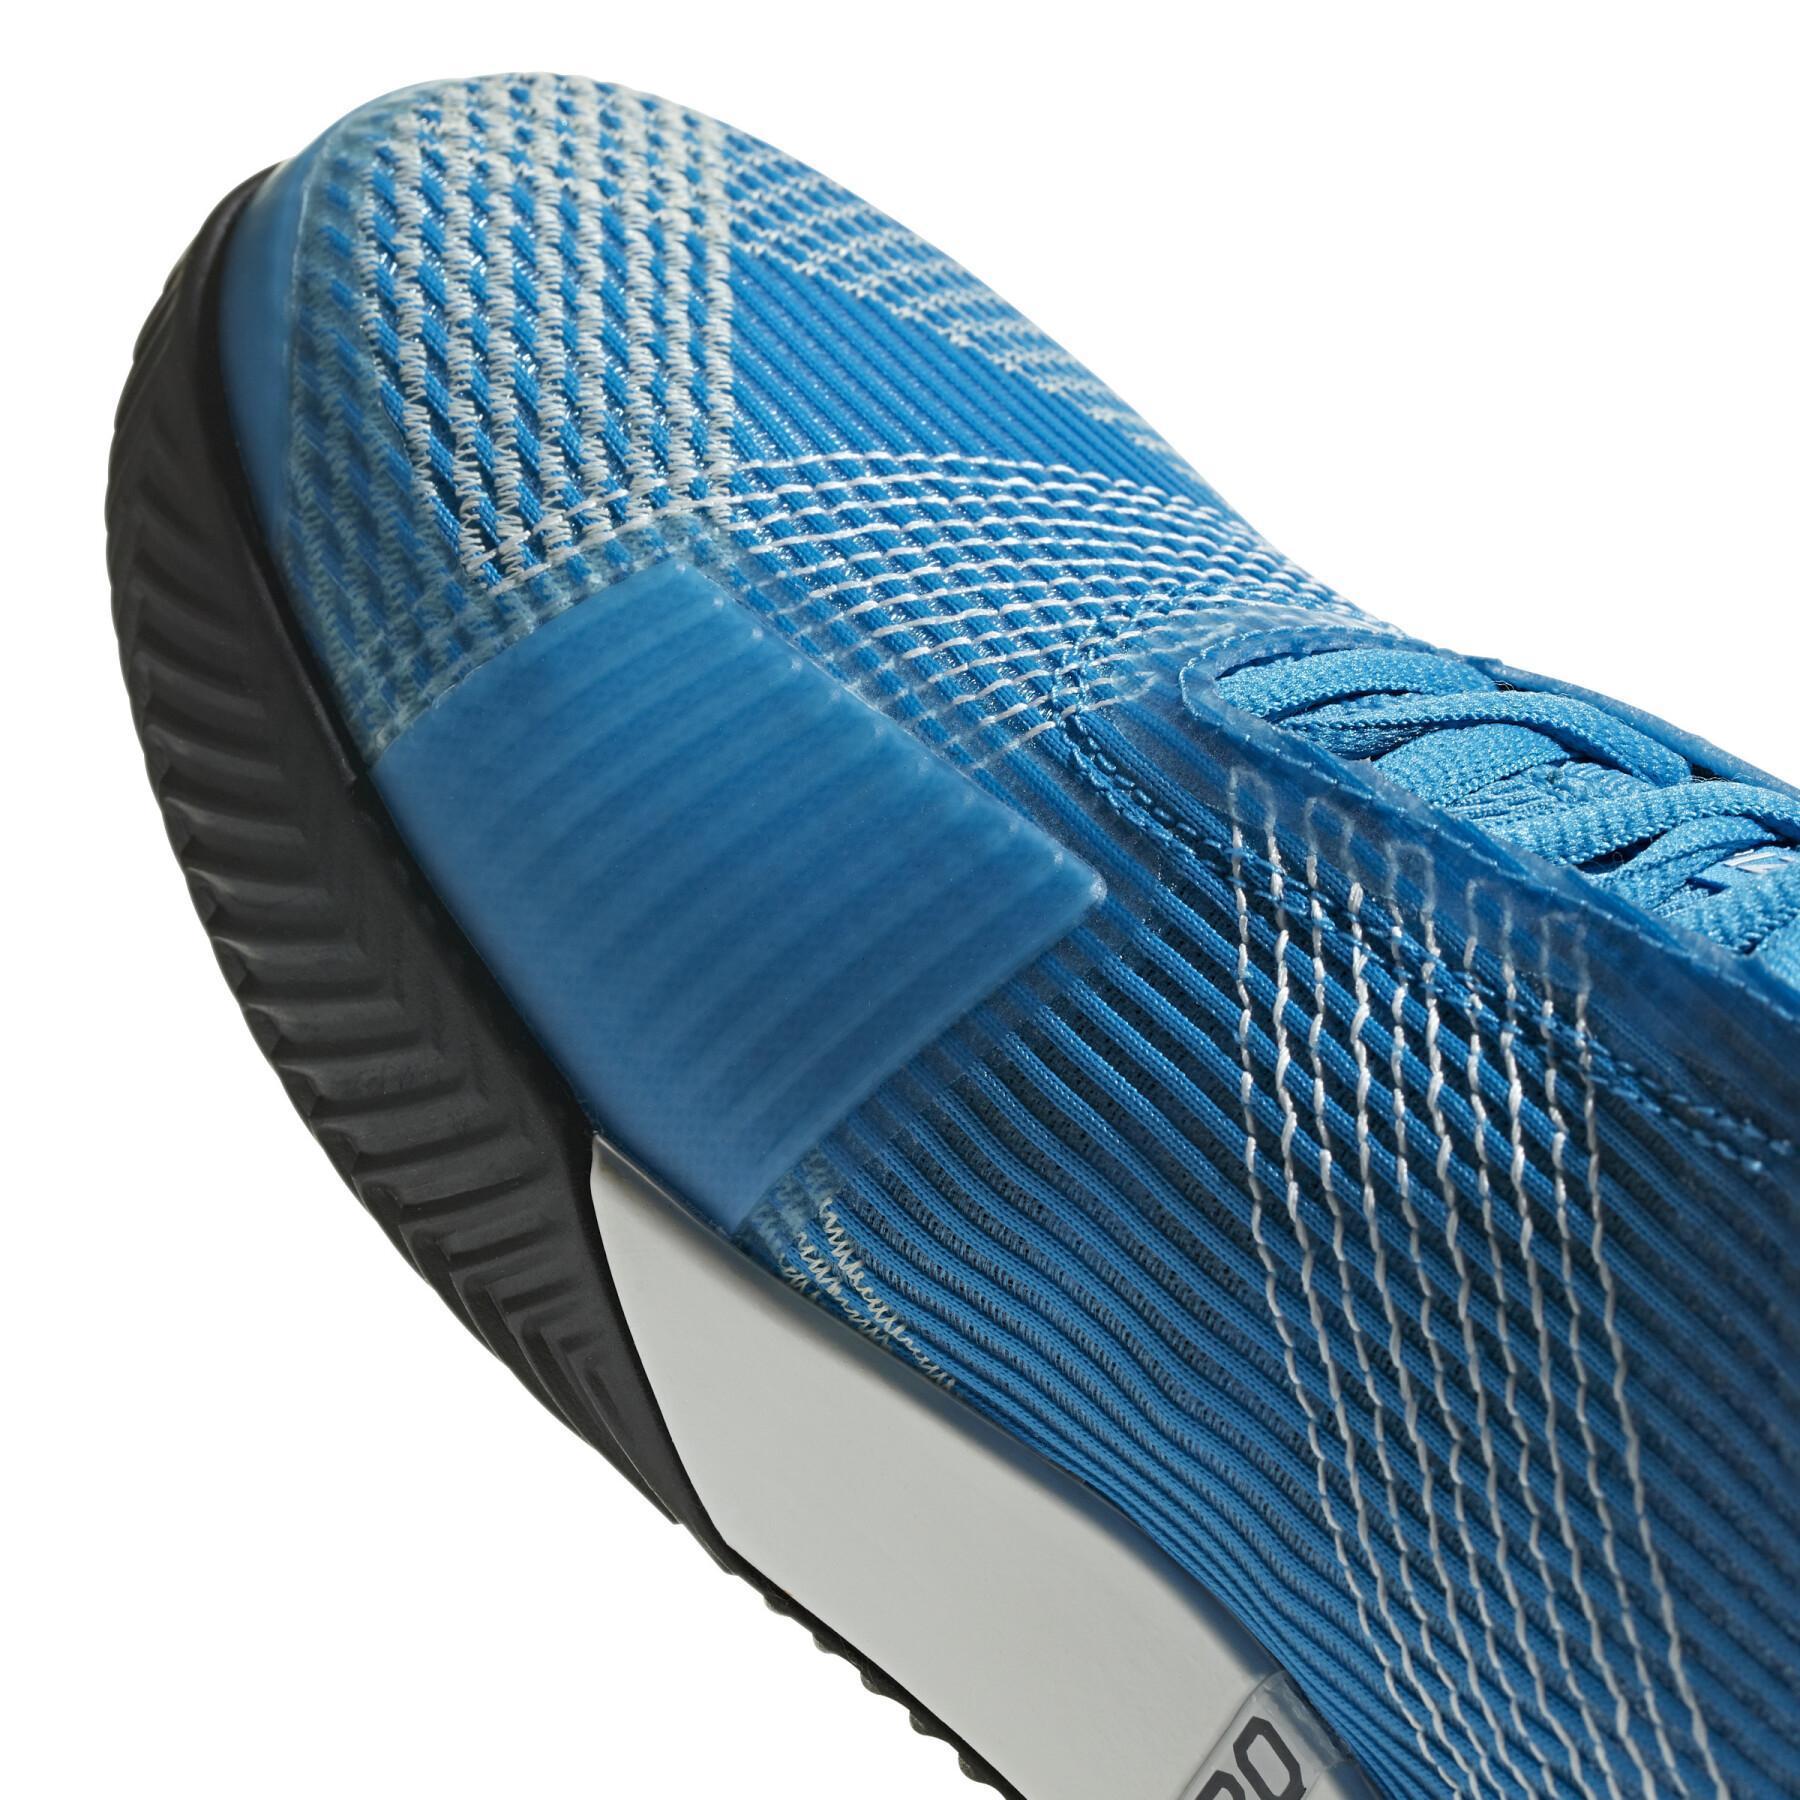 Chaussures adidas Adizero Ubersonic 3.0 Clay